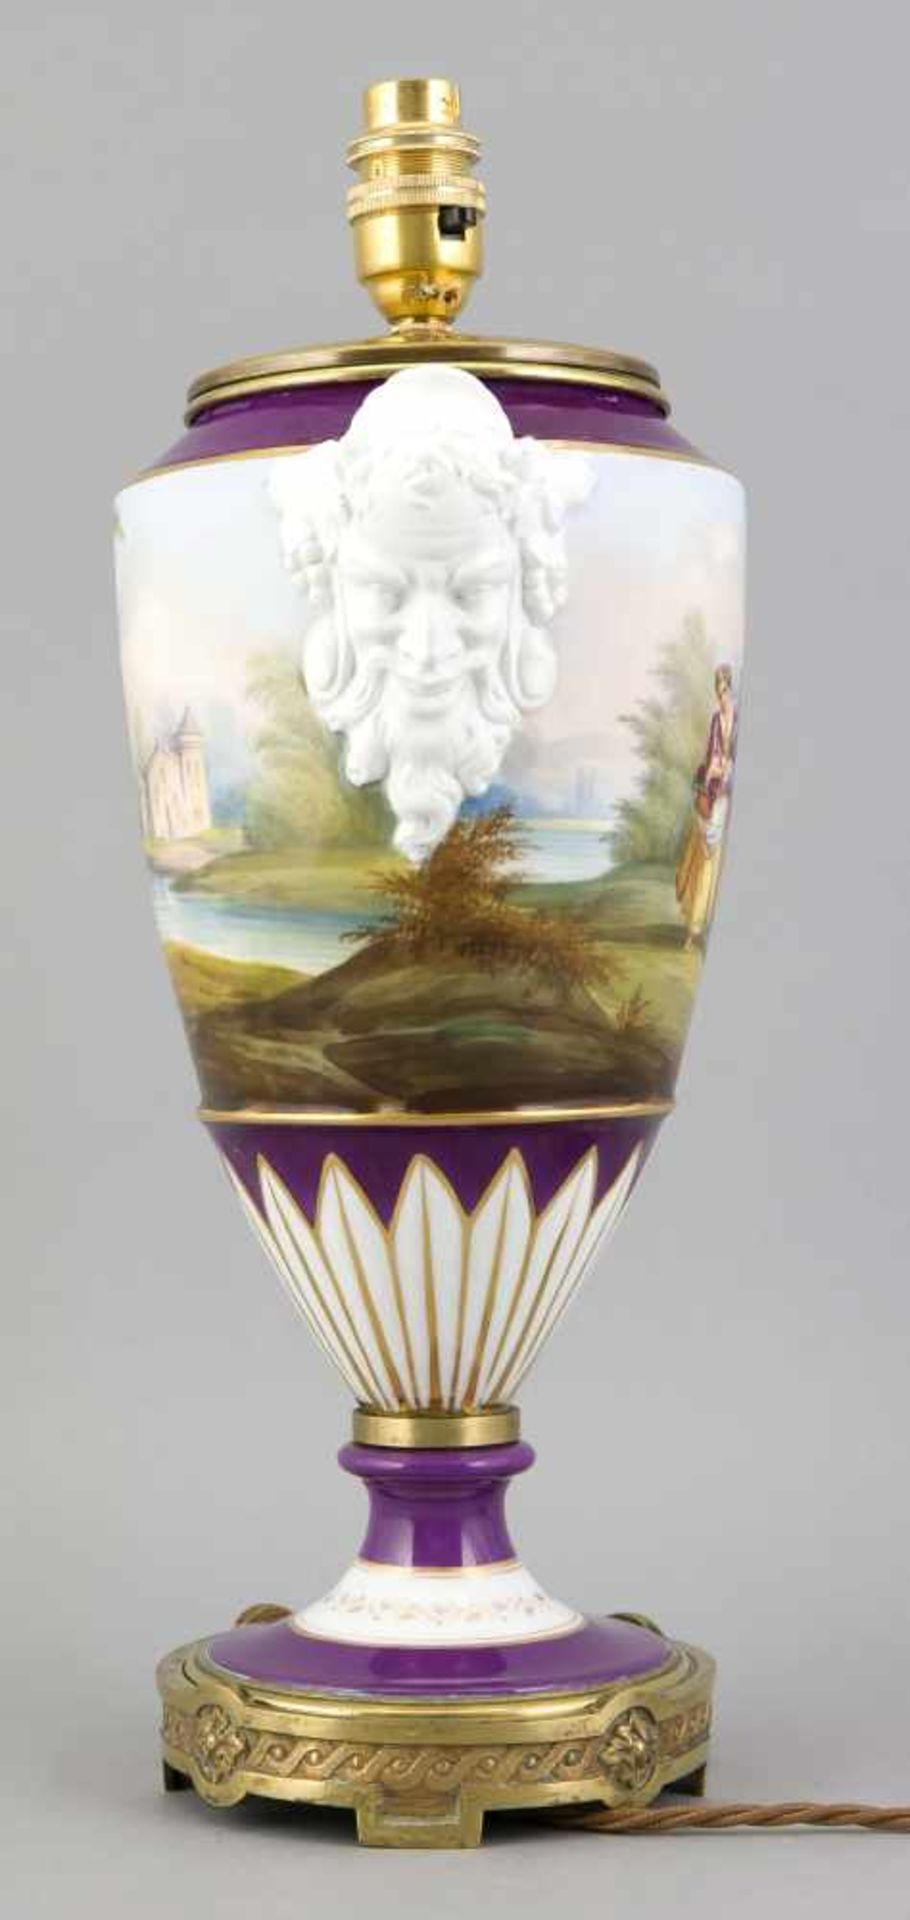 Amphorenlampe, w. Frankreich, 19. Jh., Amphorenvase mit Metallmontage als Lampenfuß, umlaufende - Bild 3 aus 3